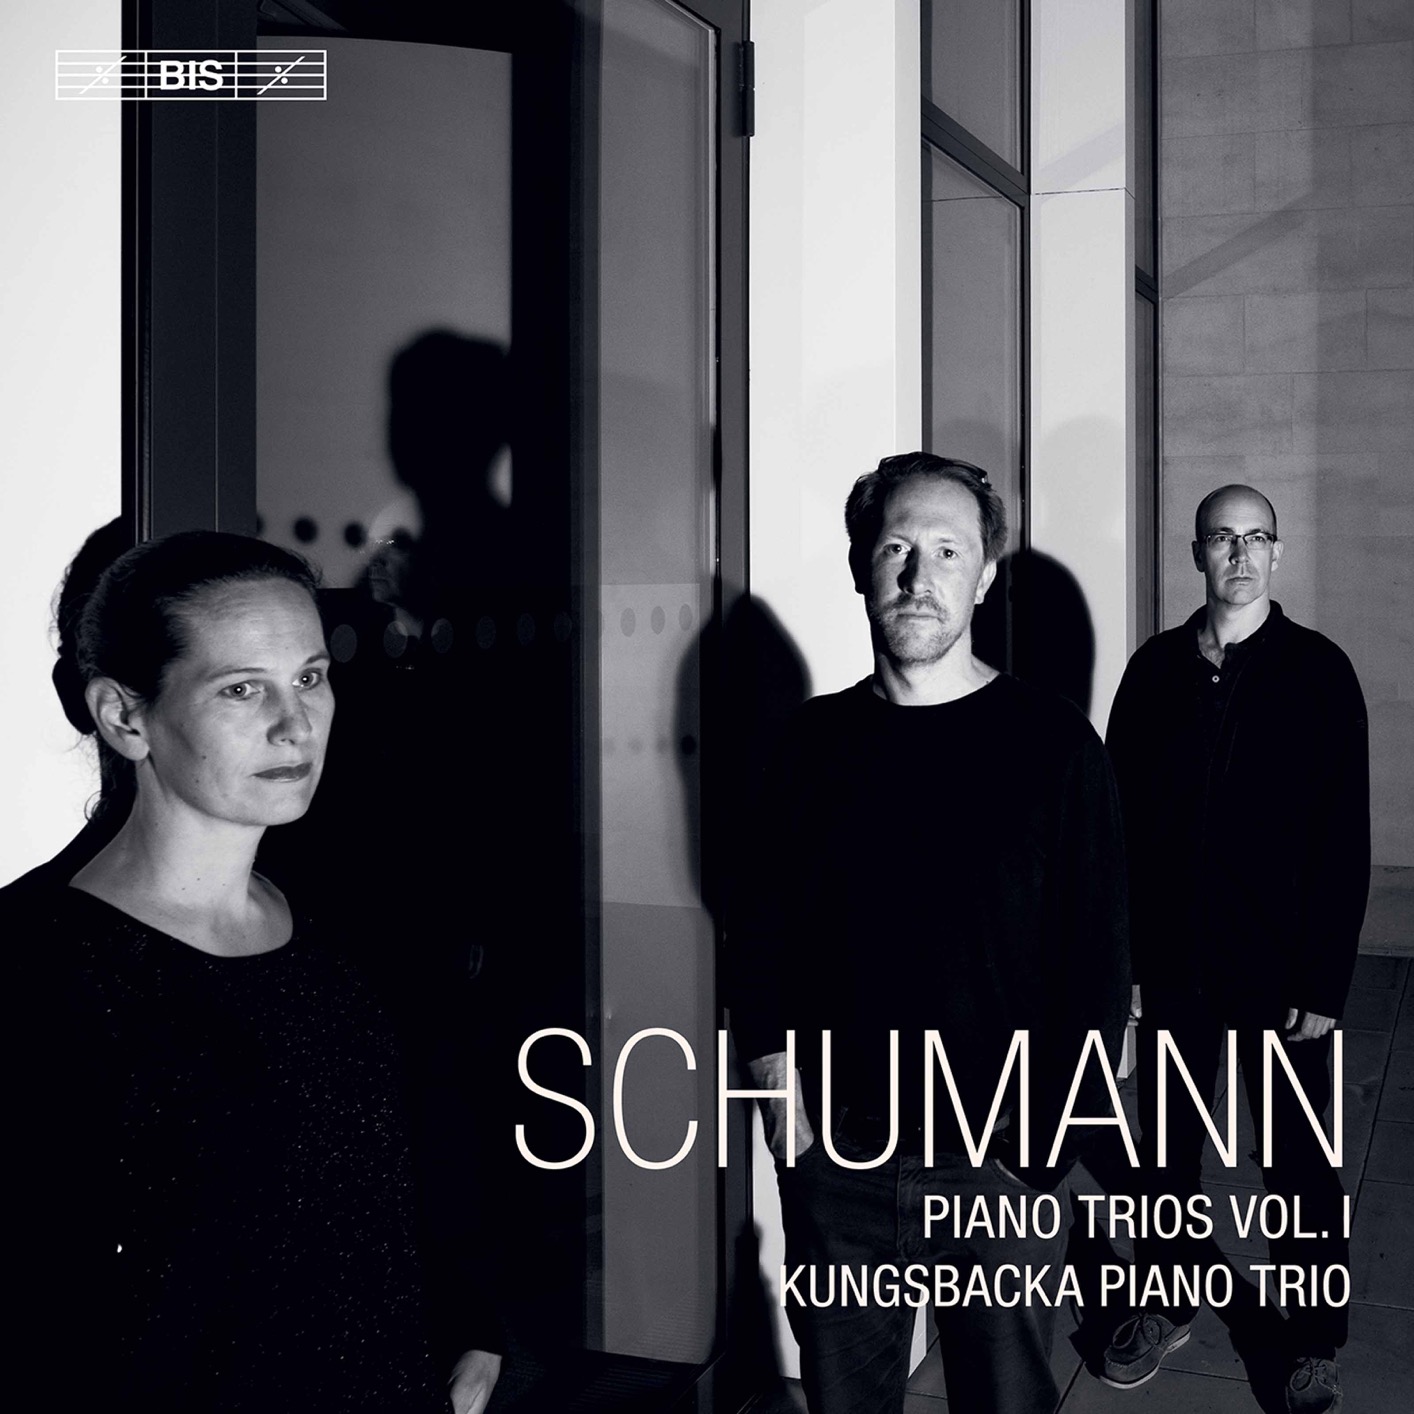 Kungsbacka Piano Trio – R. Schumann: Piano Trios, Vol. 1 (2020) [FLAC 24bit/96kHz]